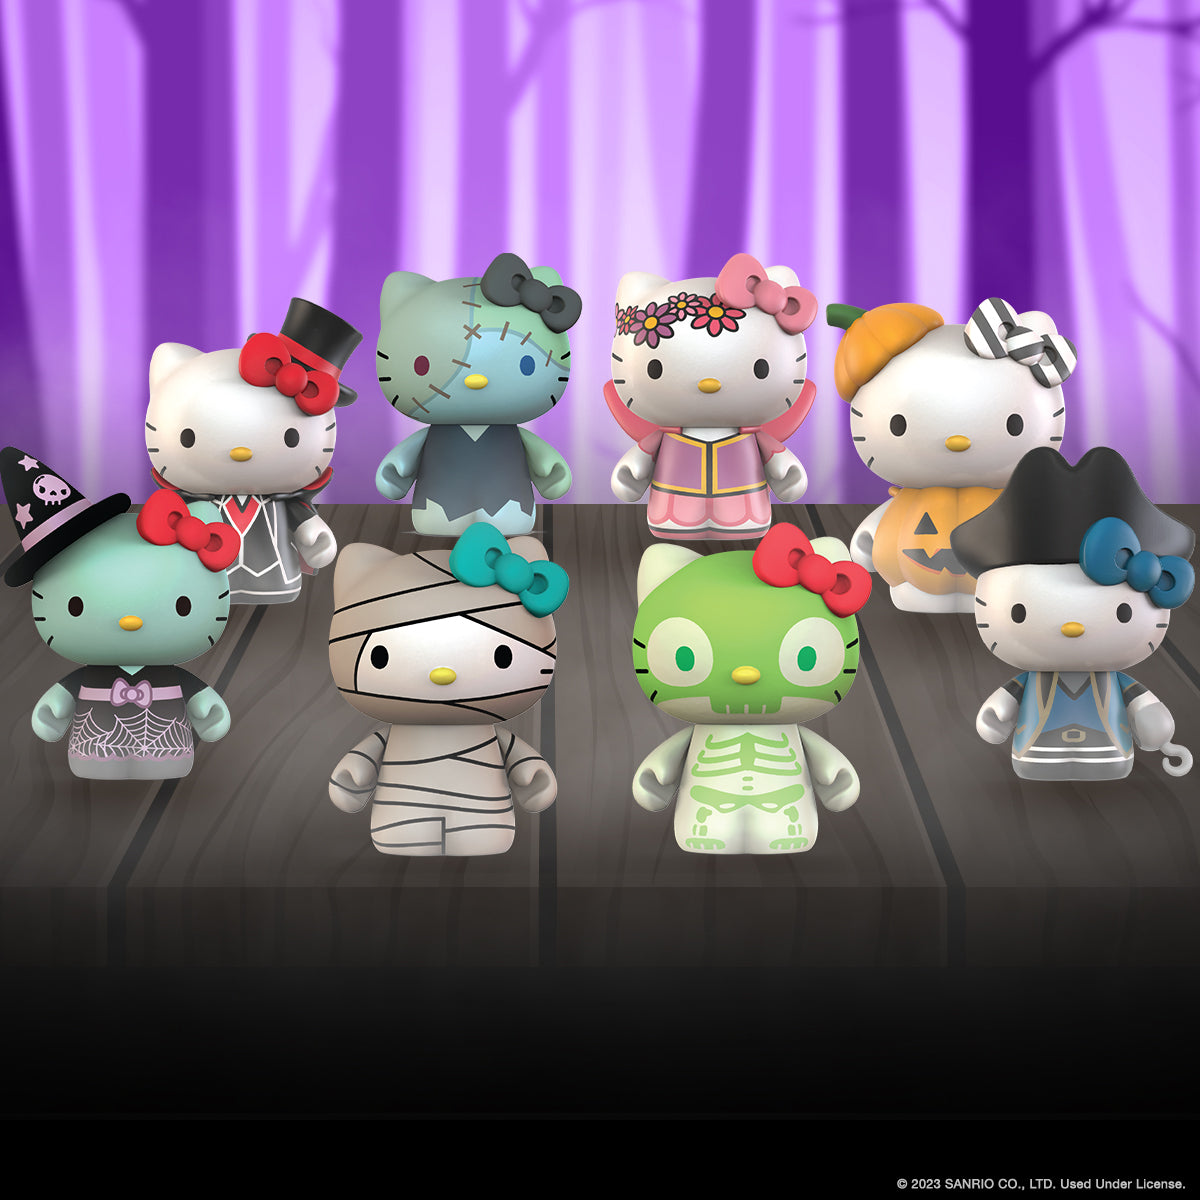 Kidrobot Hello Kitty x Team USA Mini Figures